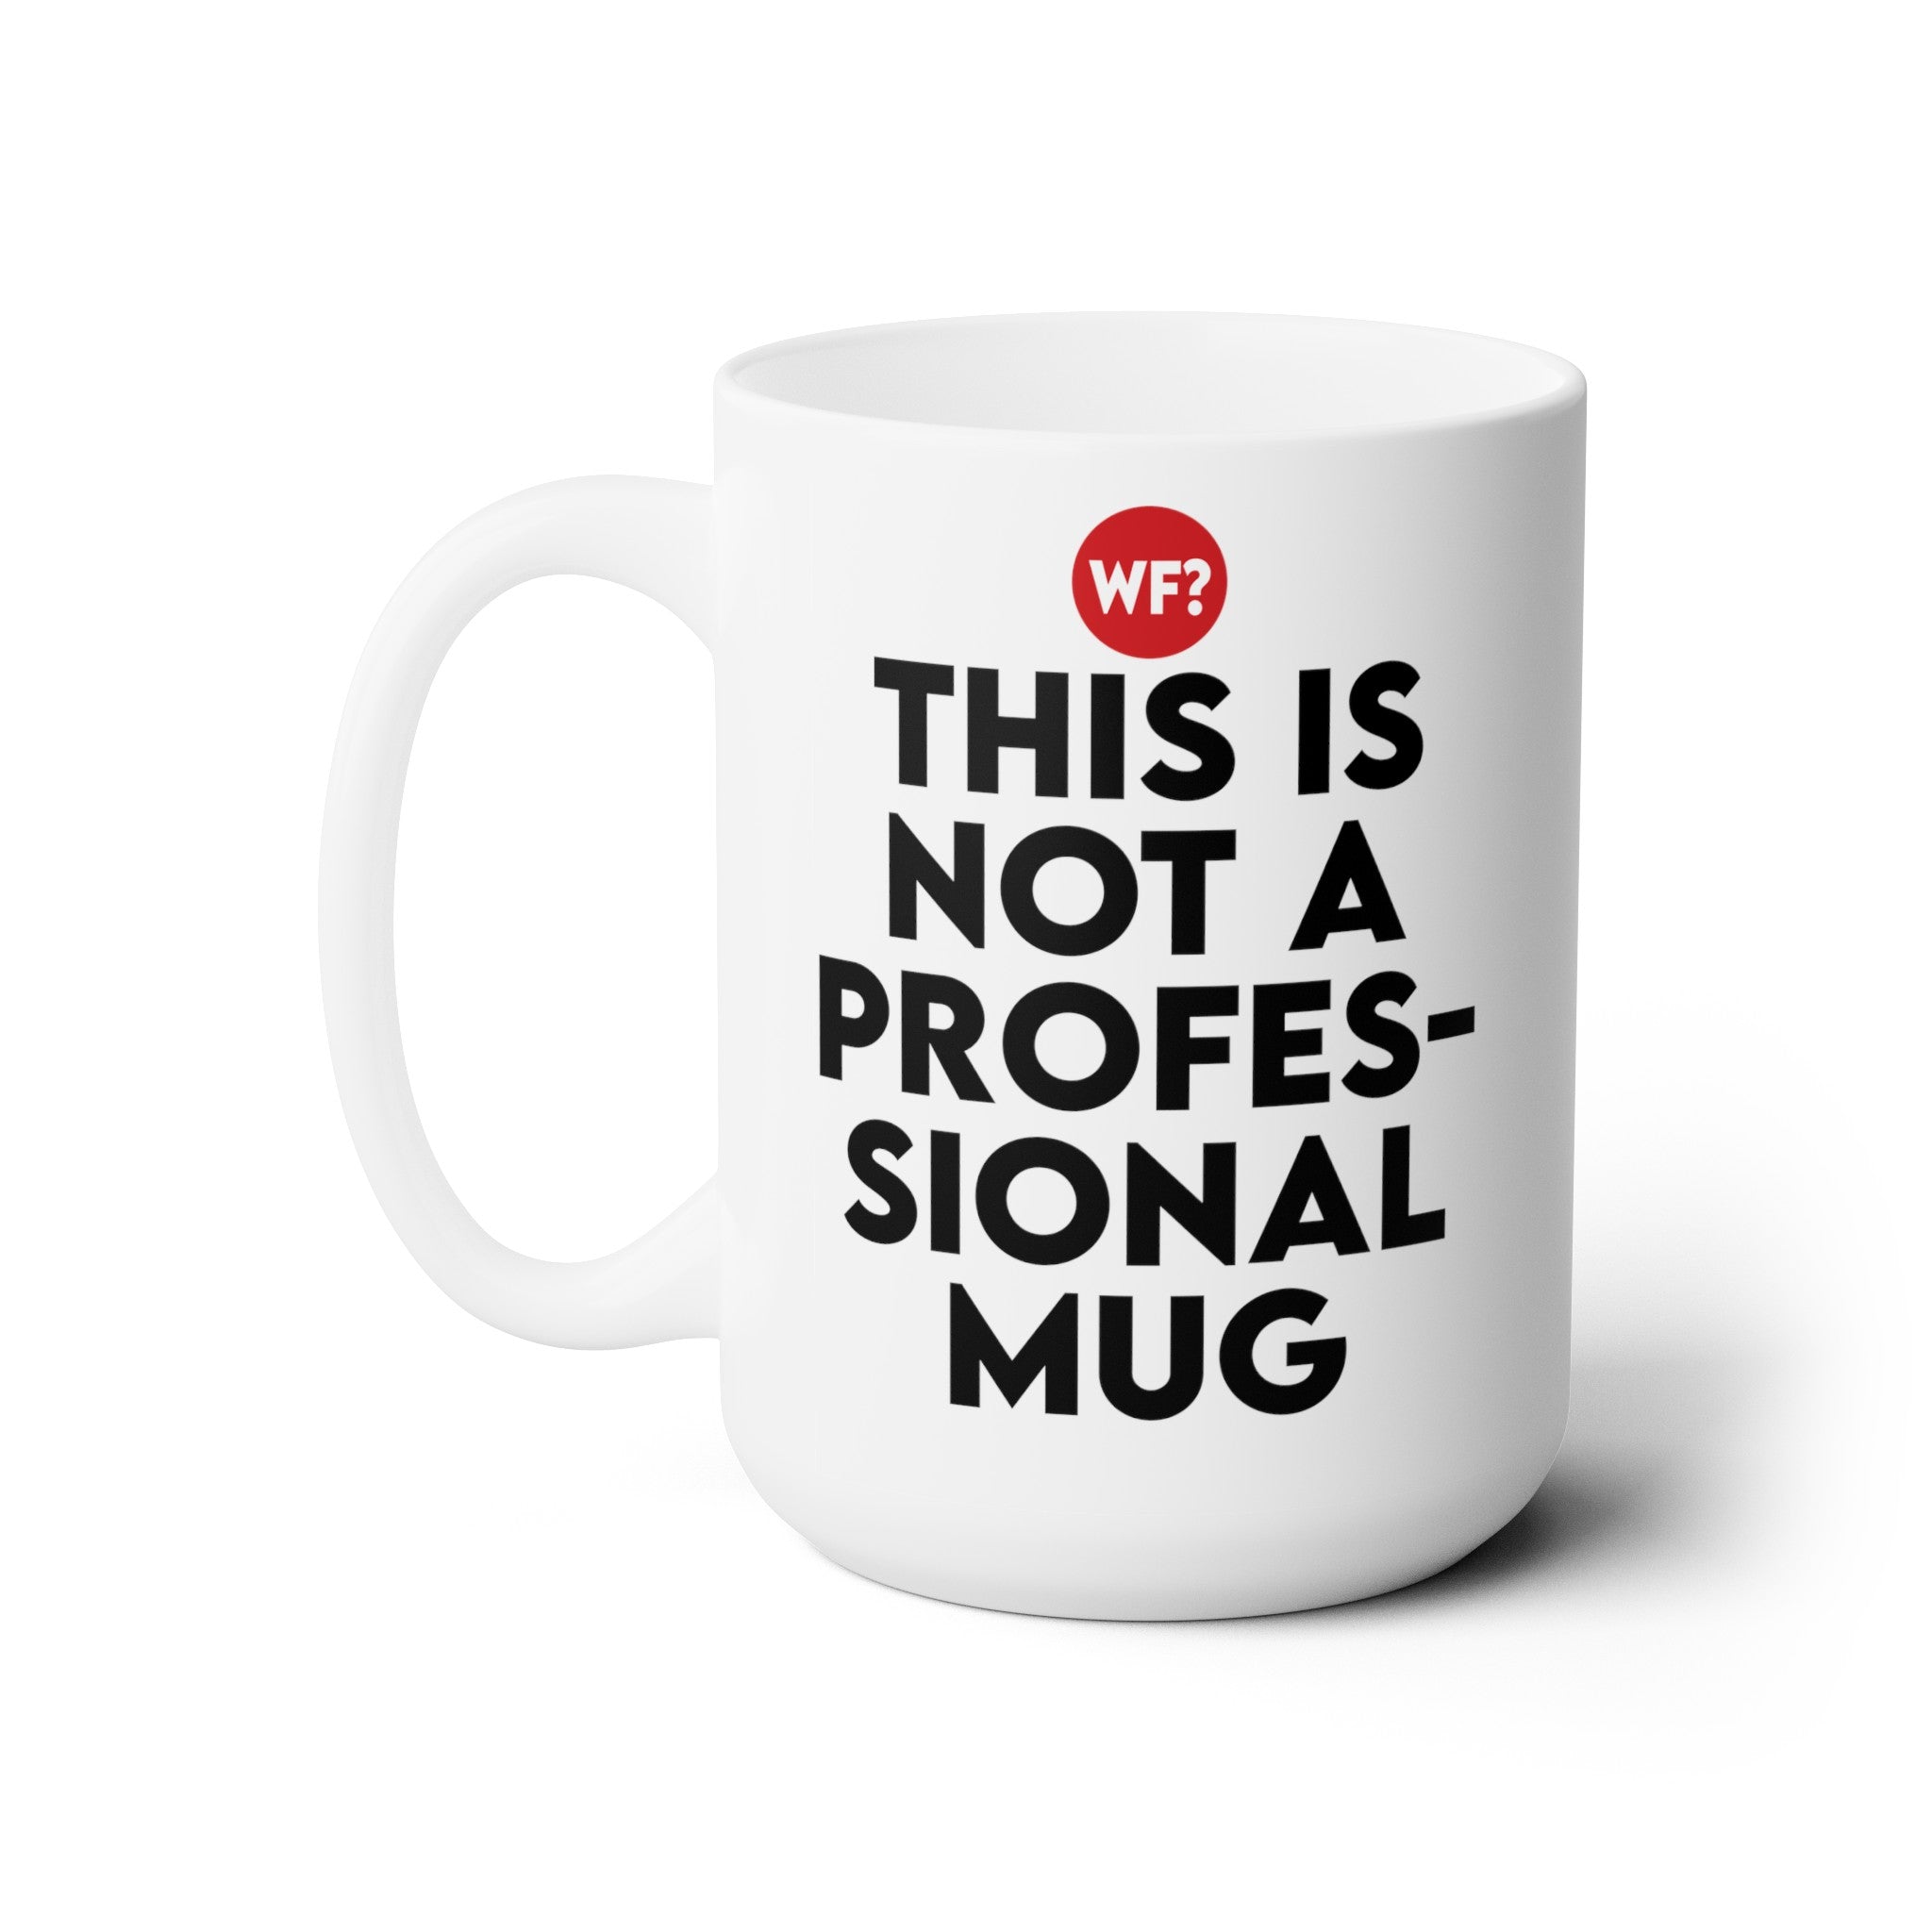 Not A Professional Ceramic Mug 15oz